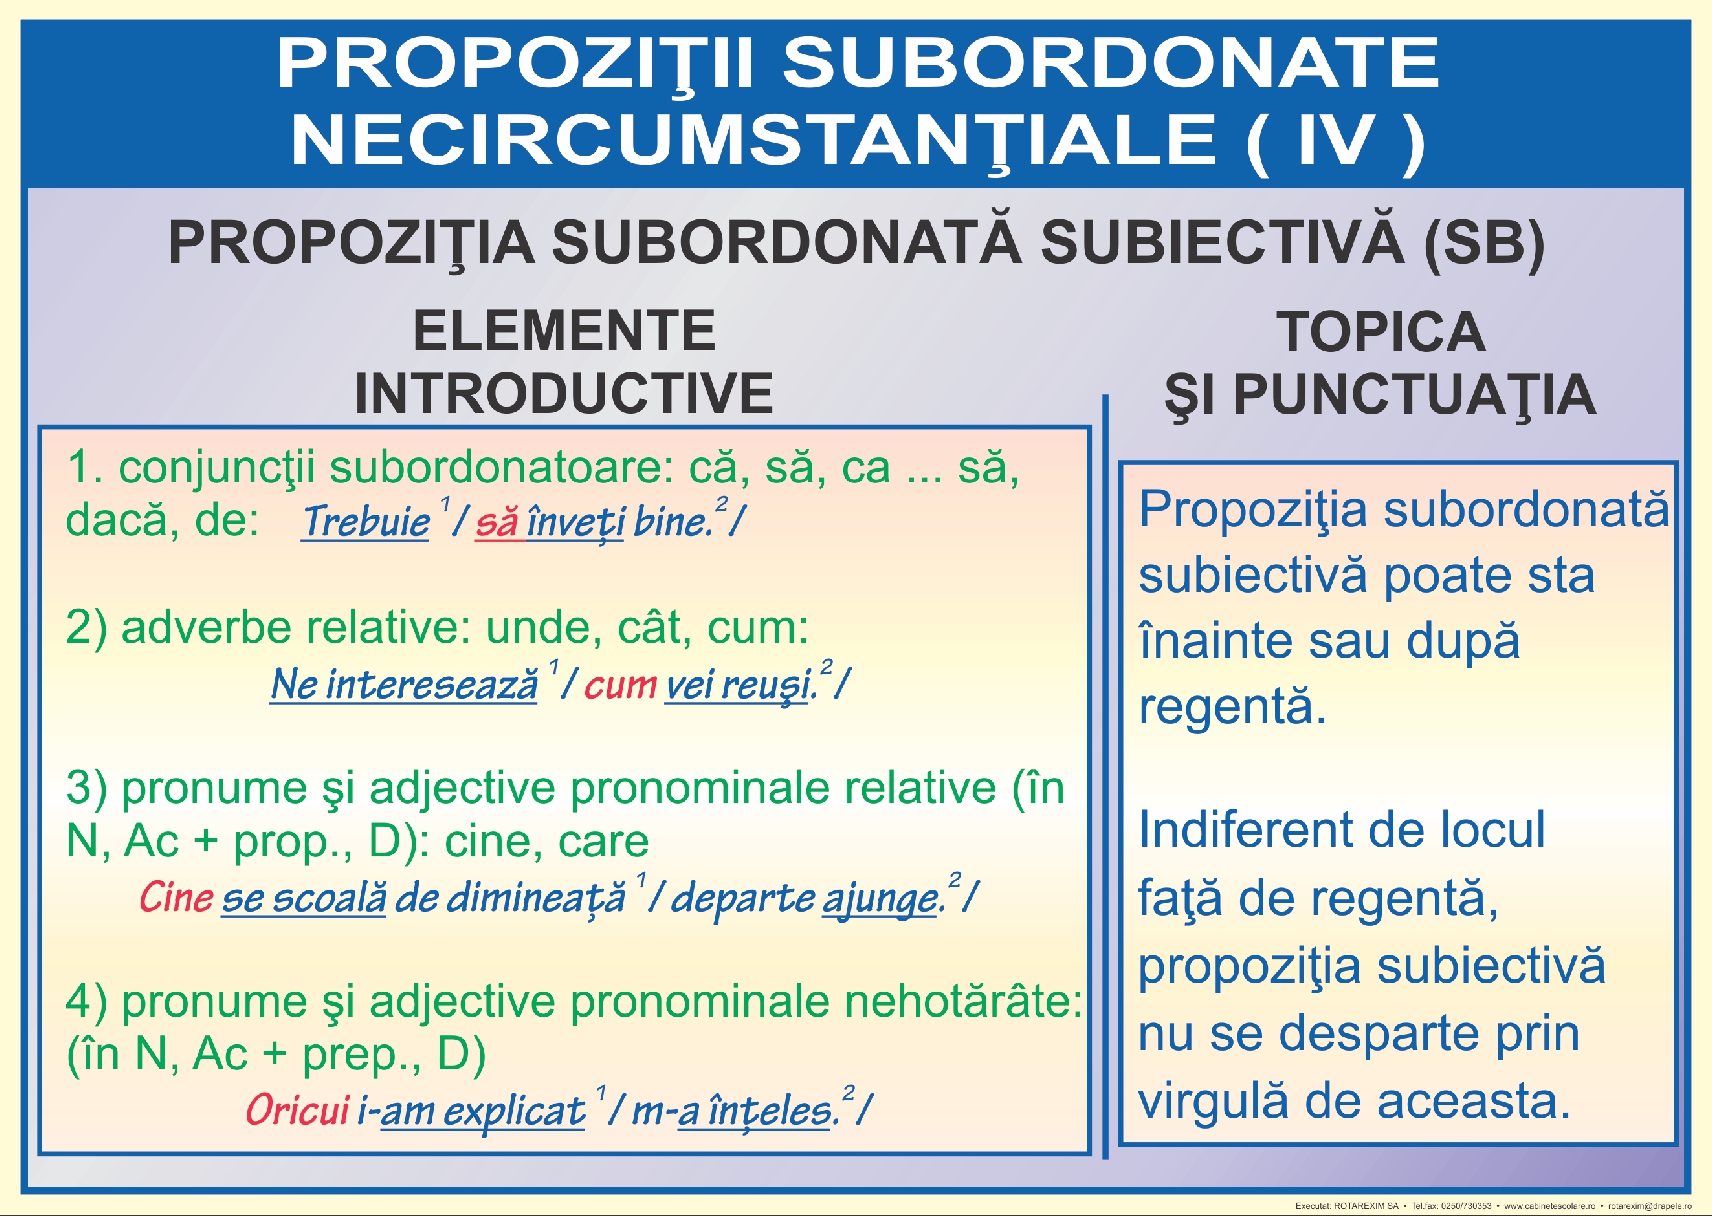 Propozitii subordonate necircumstantiale - IV